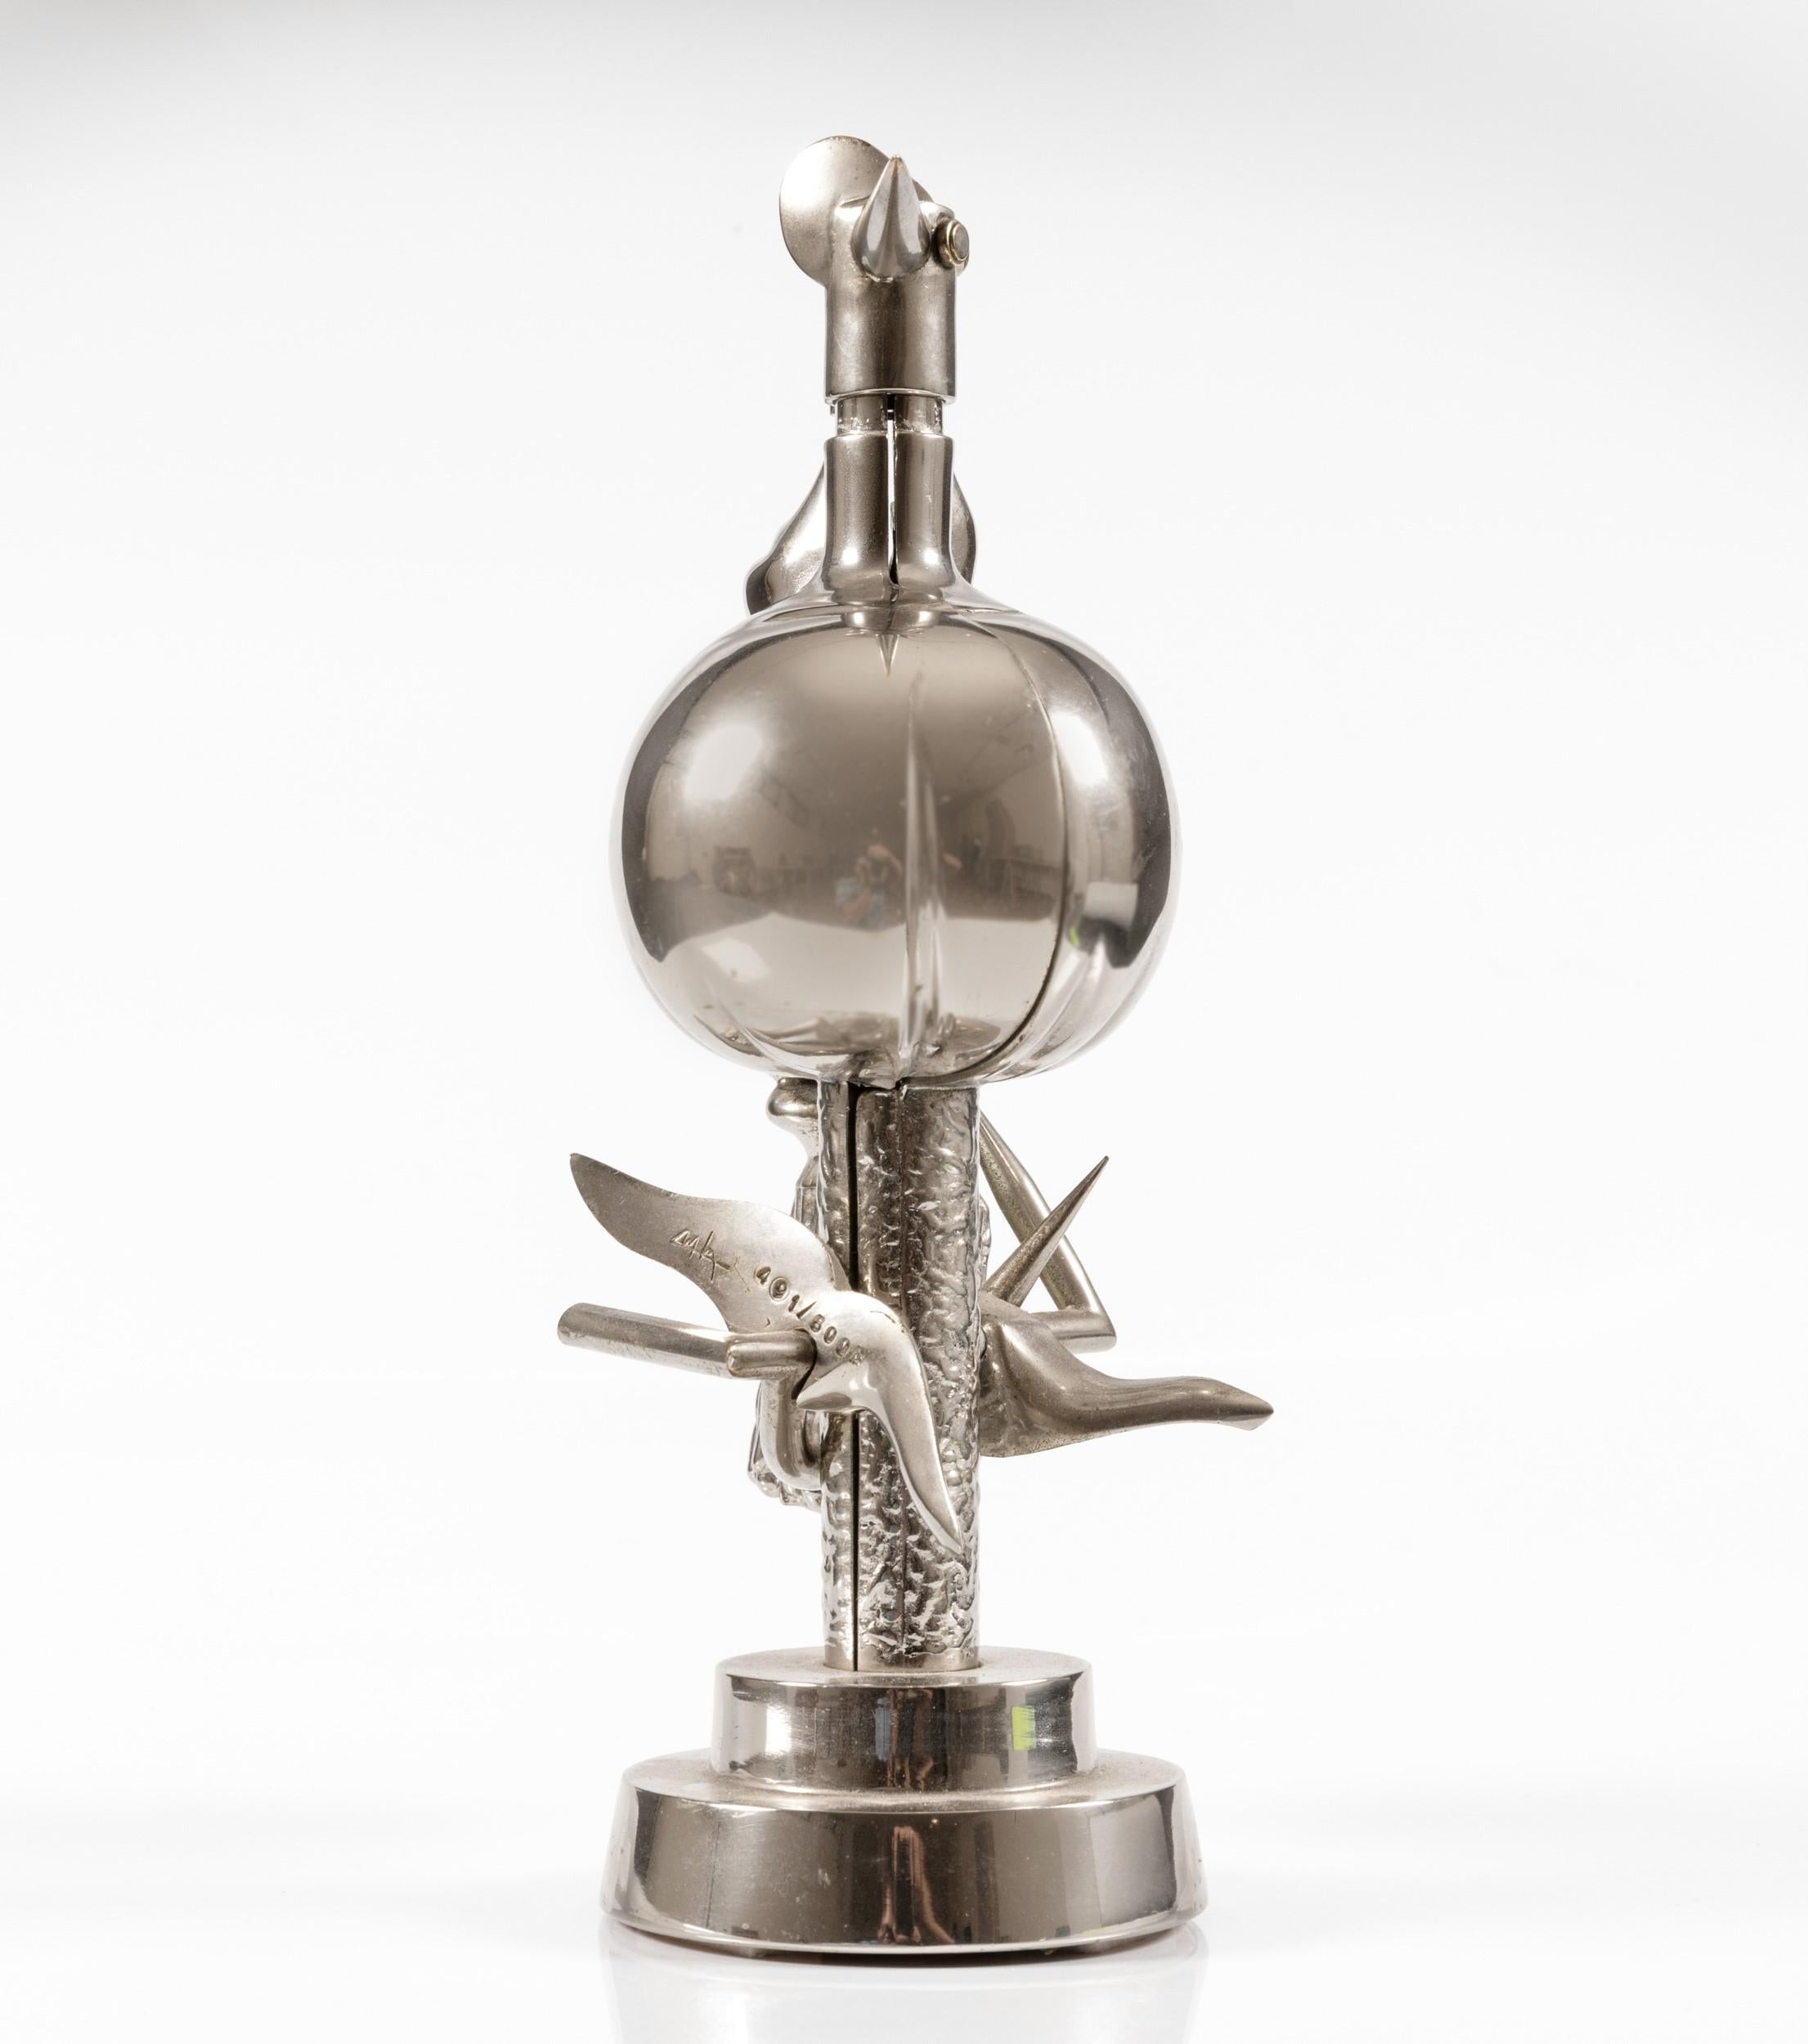 Wifredo Lam -  L’Oiseau de feu - nickel brass sculpture limited edition of 500  2